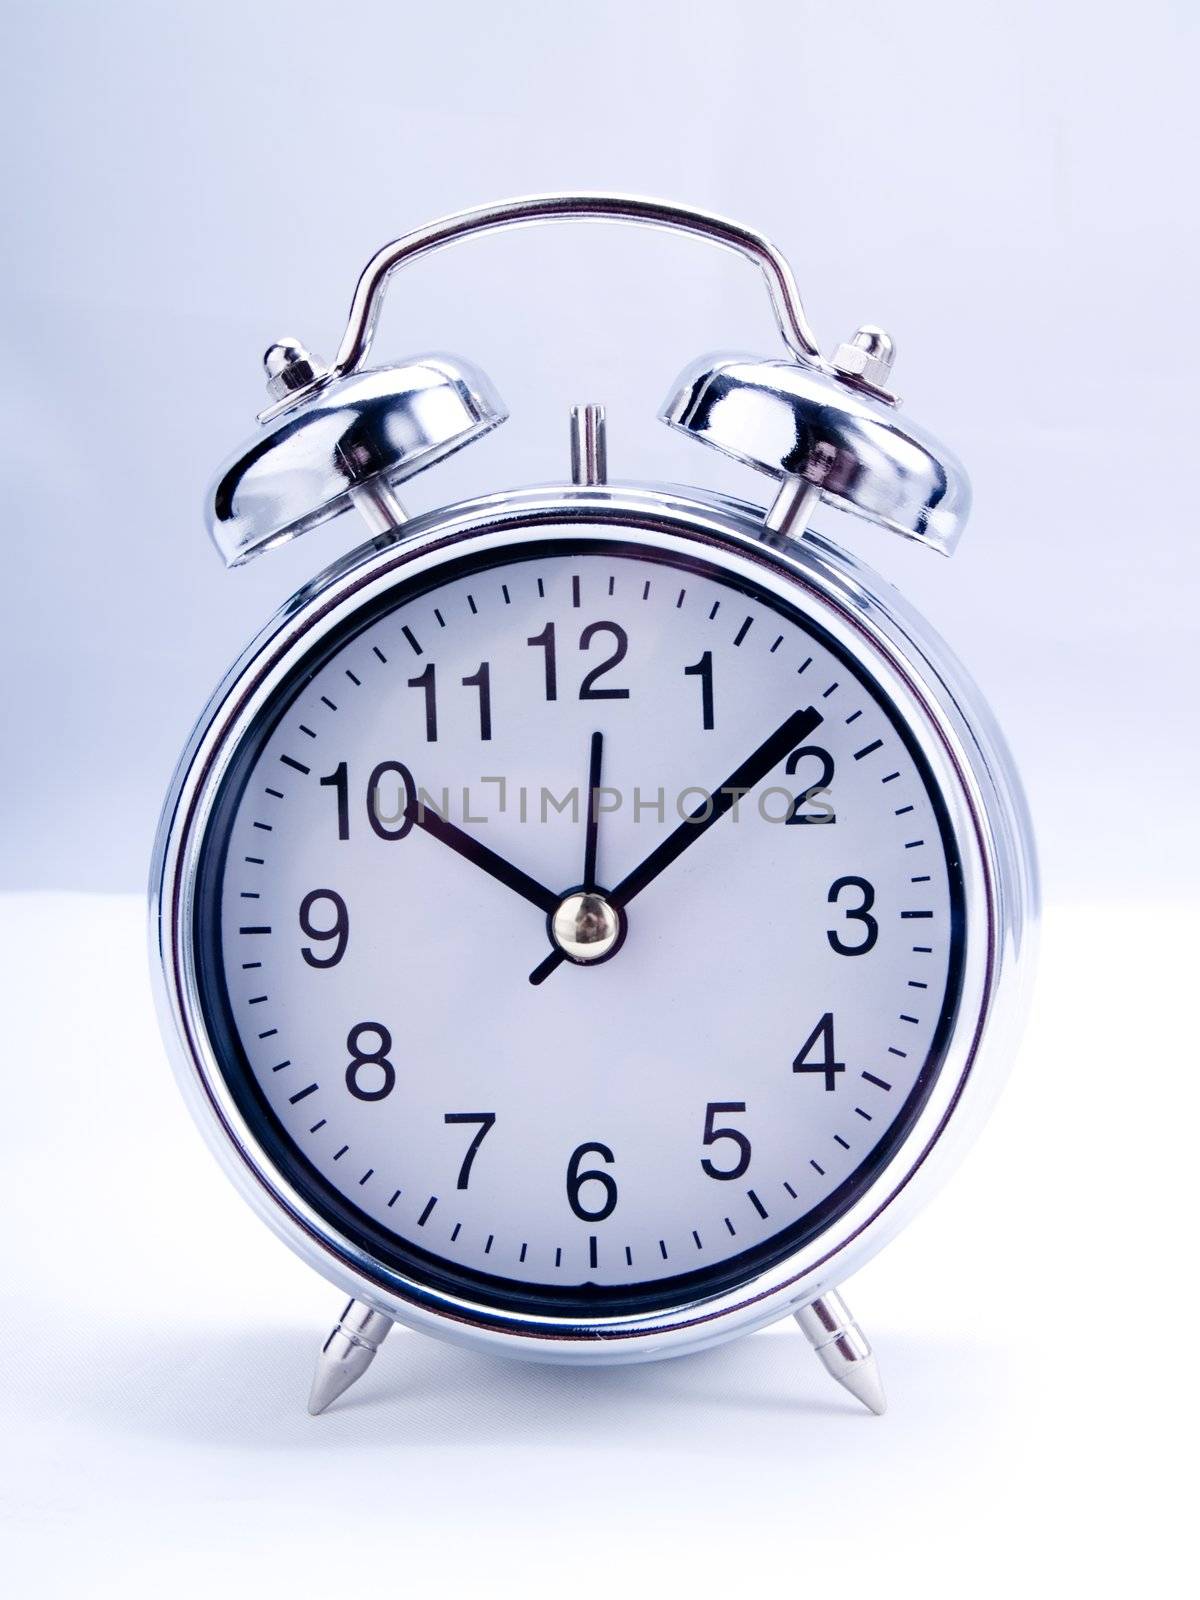 Alarm clock by henrischmit